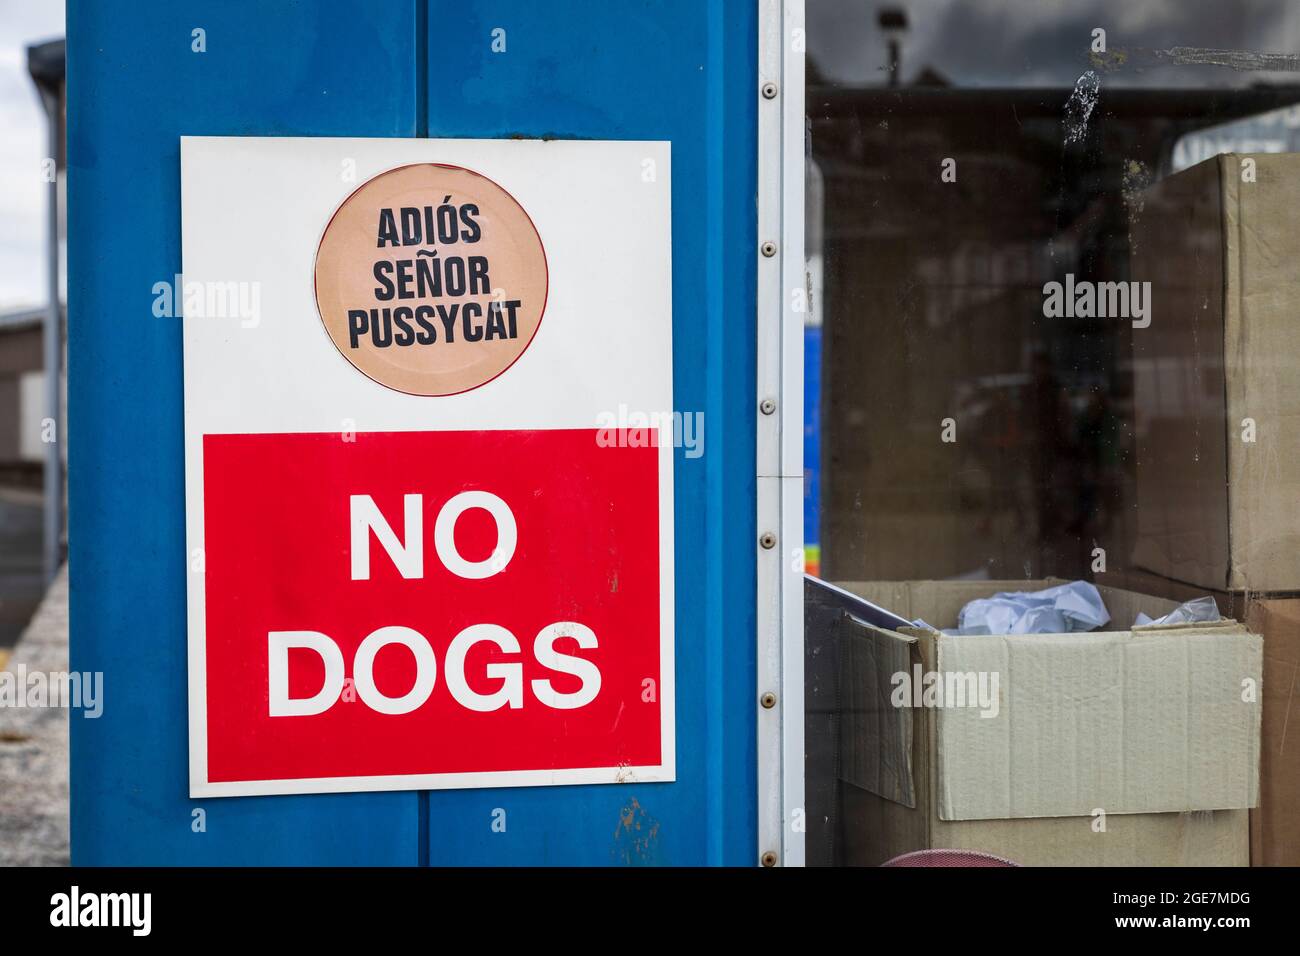 Segnale di avvertimento 'No Dogs' e 'Arrivederci to cats' in spagnolo 'Adios senor pussycat', Cornovaglia. Foto Stock